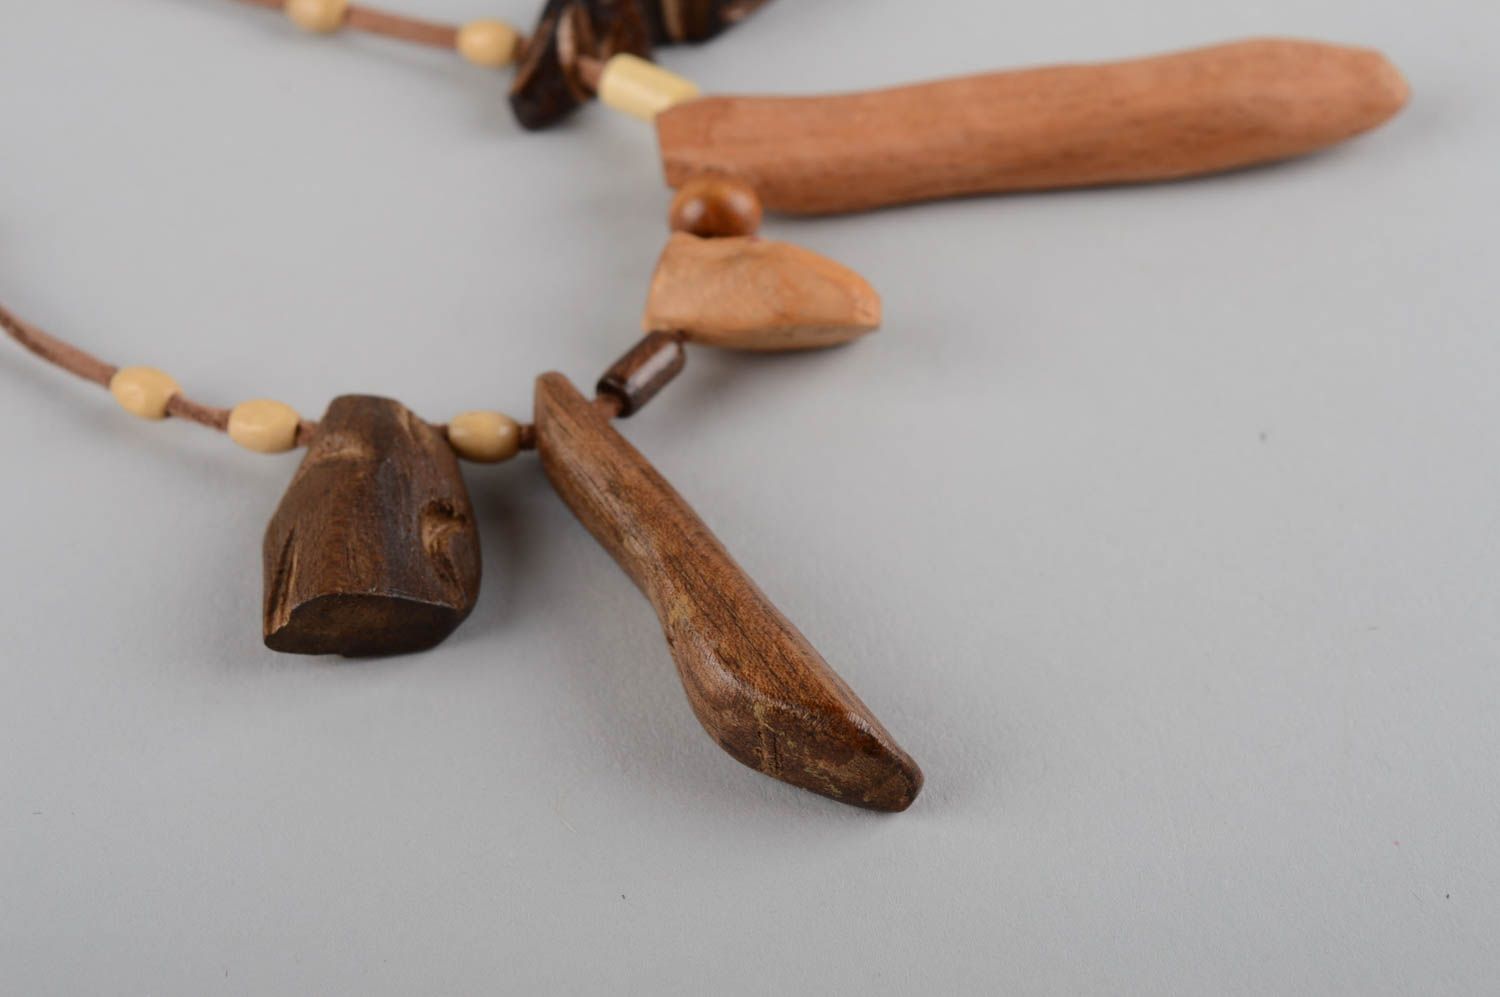 Кулон ручной работы украшение на шею авторский аксессуар из дерева ореха и бука фото 8